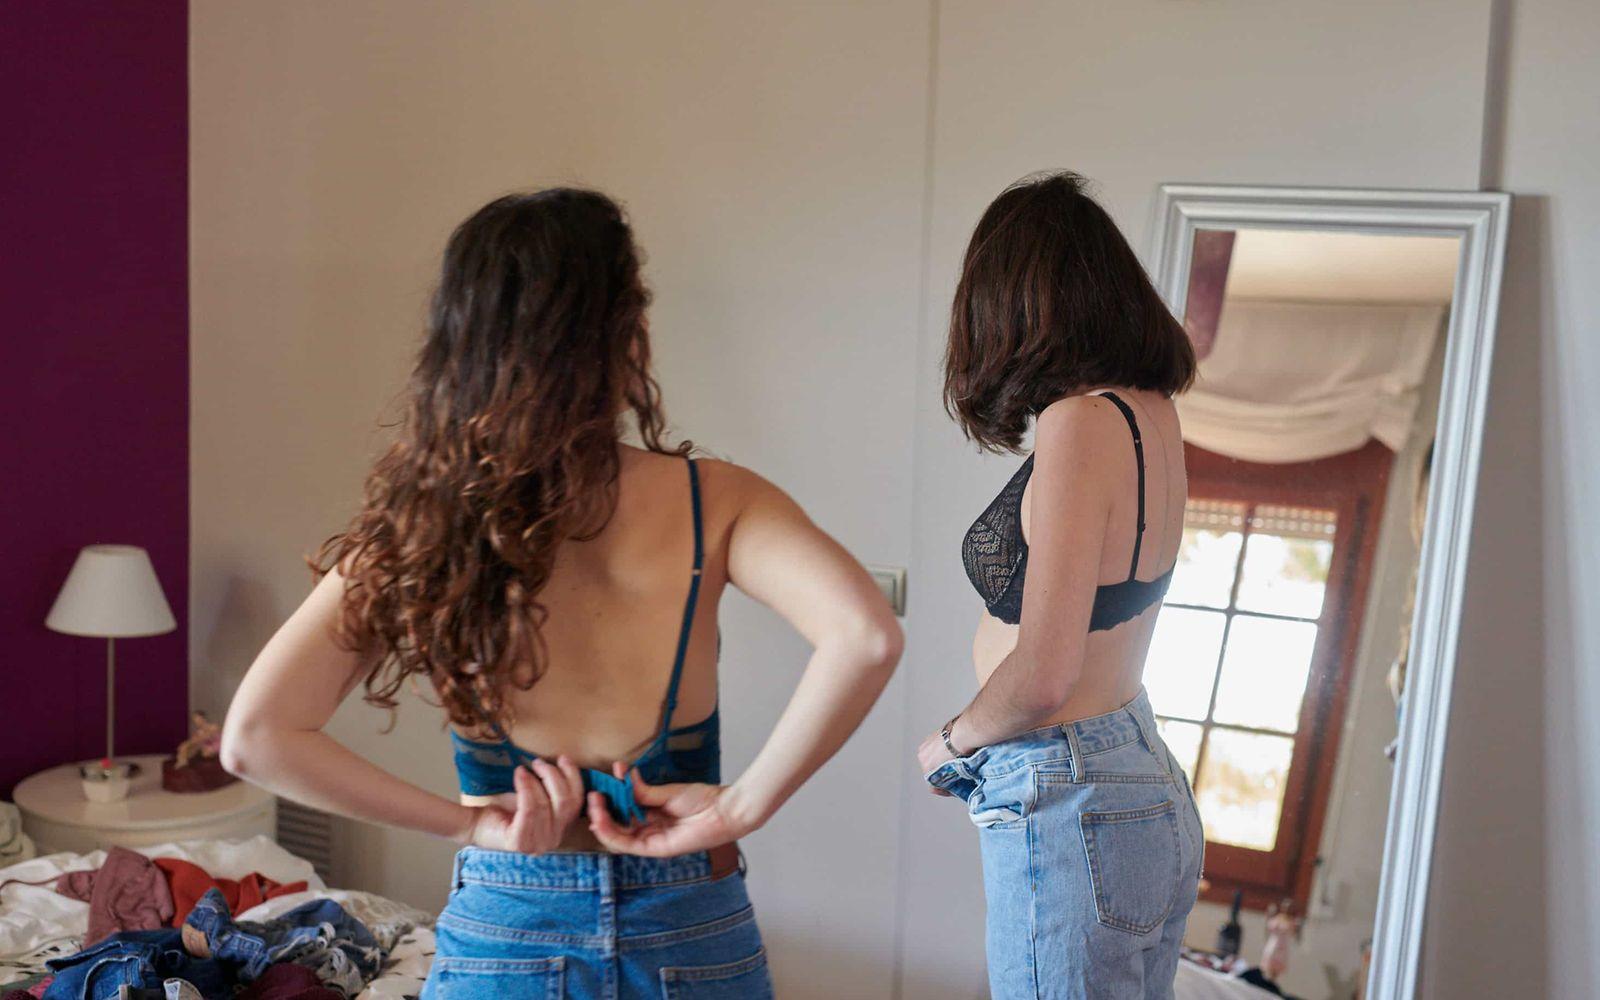 Magersucht:  Zwei Frauen in Jeans und BH betrachten sich im Spiegel.